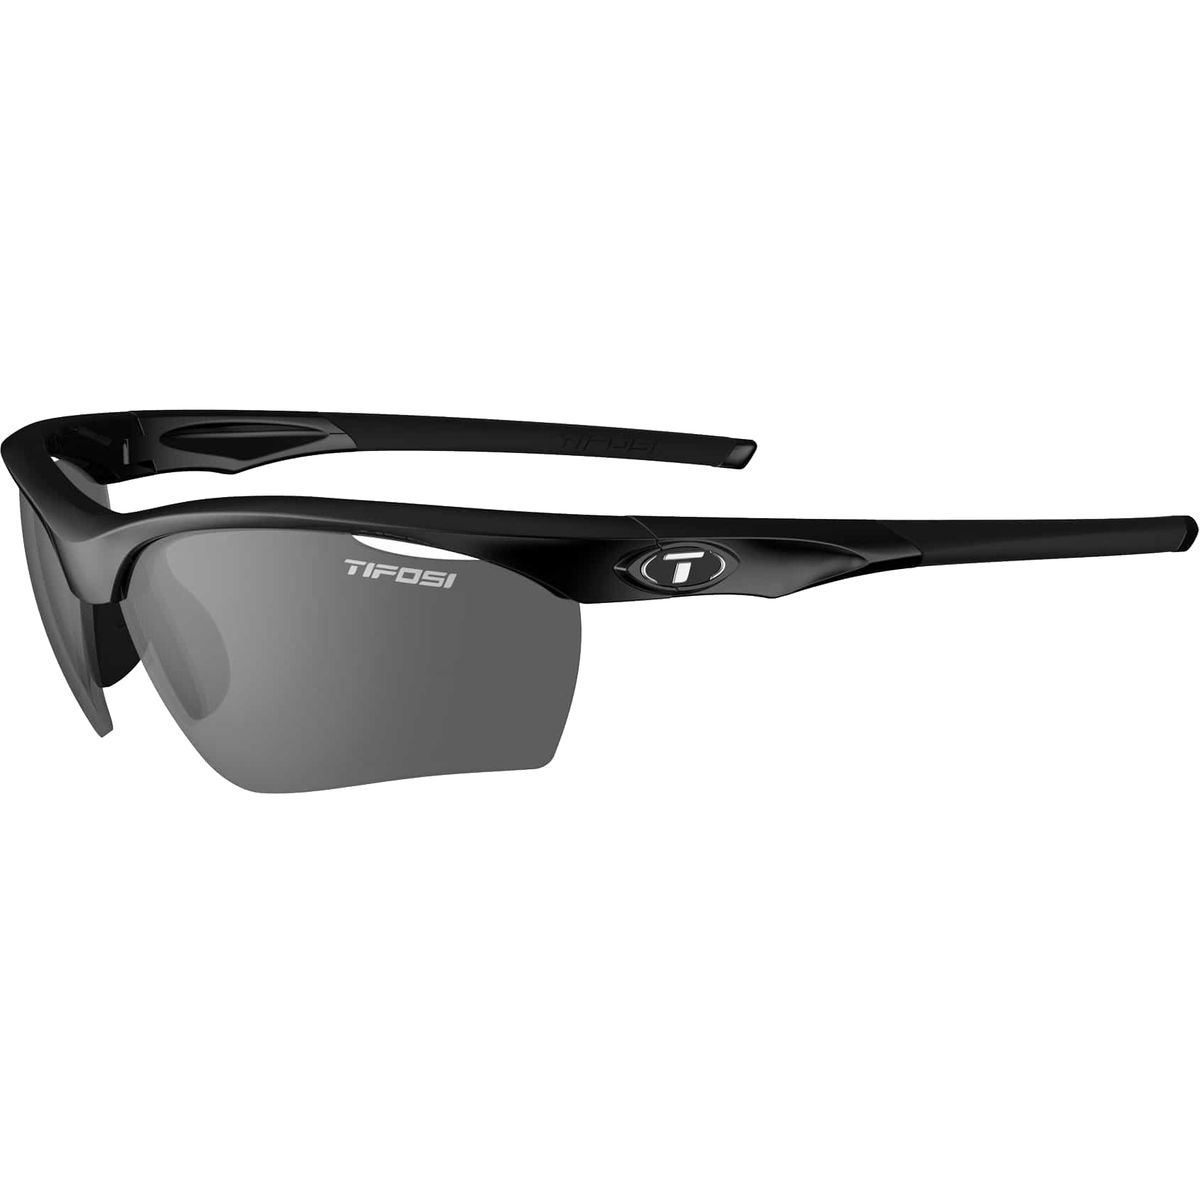 Tifosi Optics Vero Sunglasses - Men's